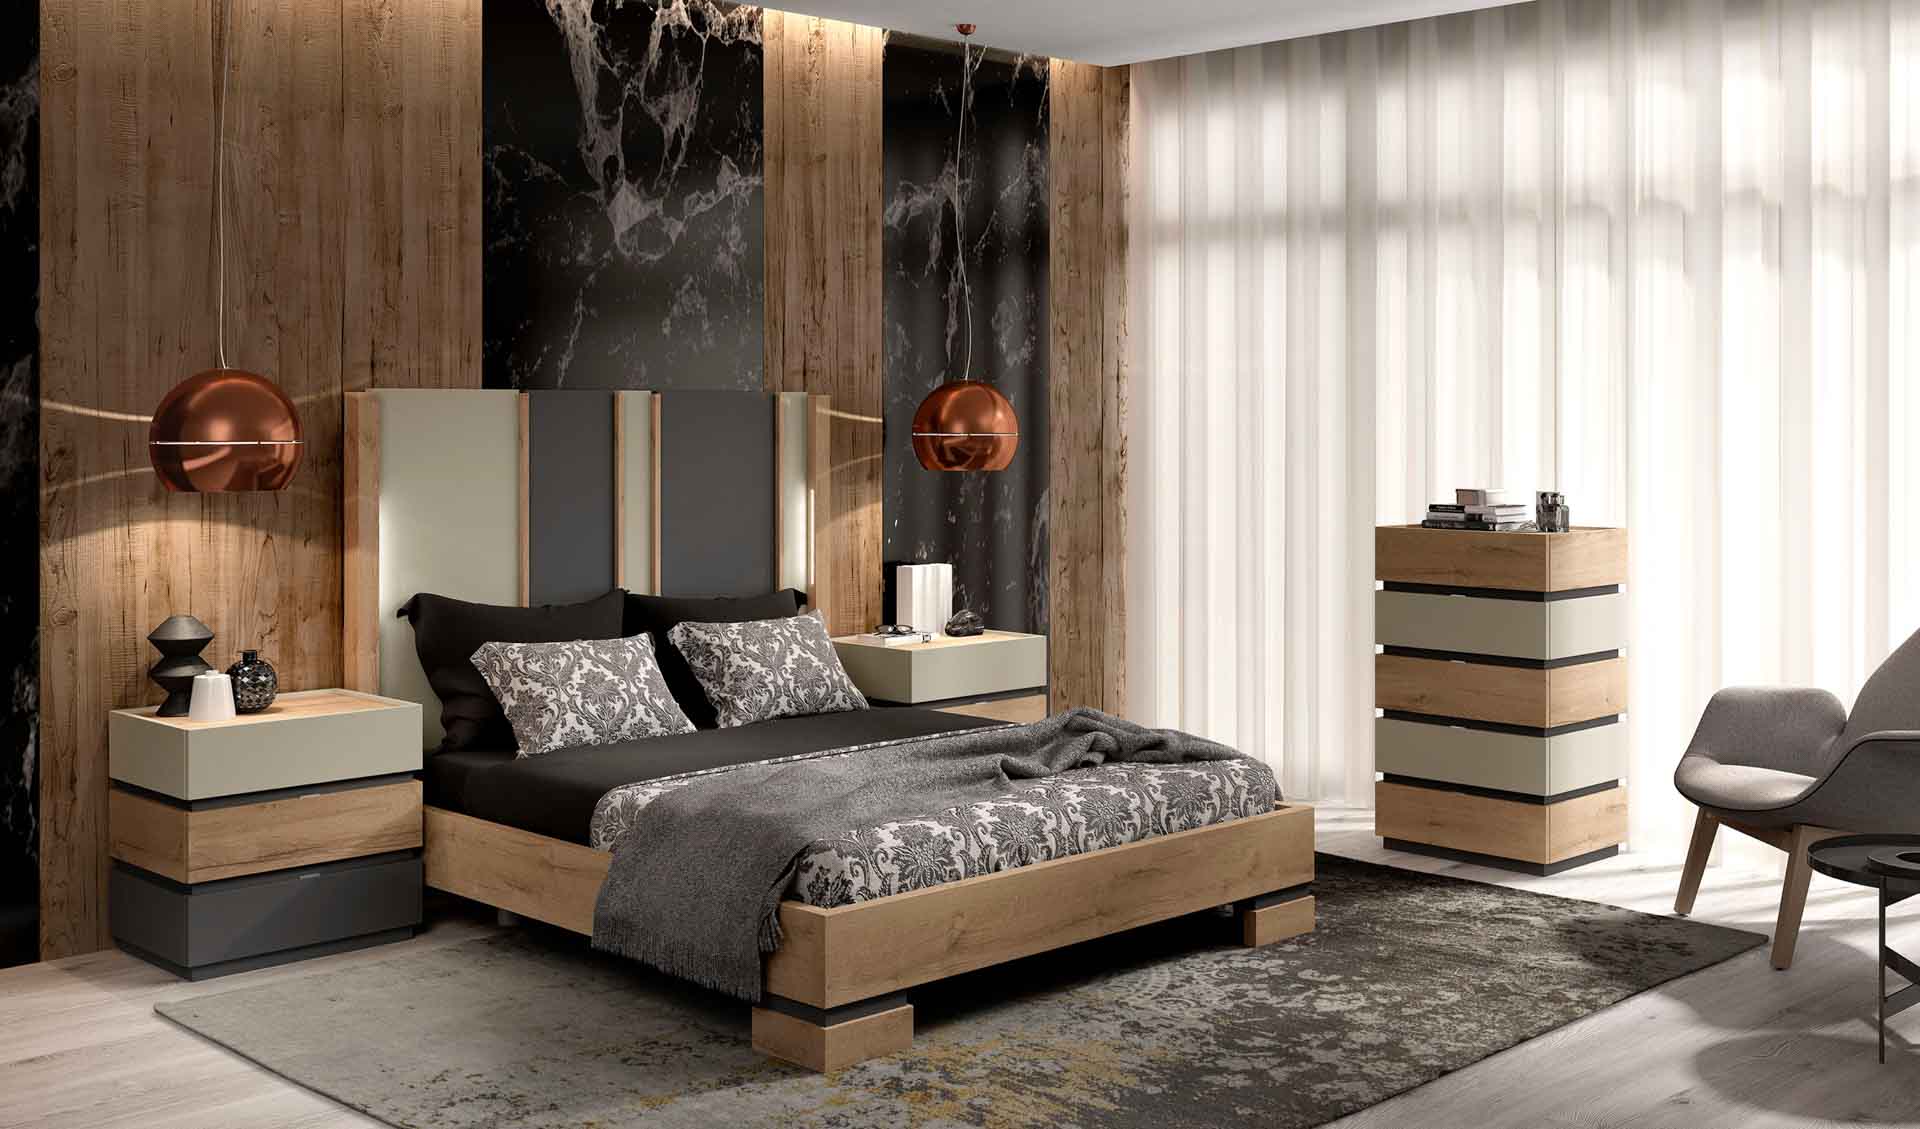 Diseño de mobiliario de dormitorio 22